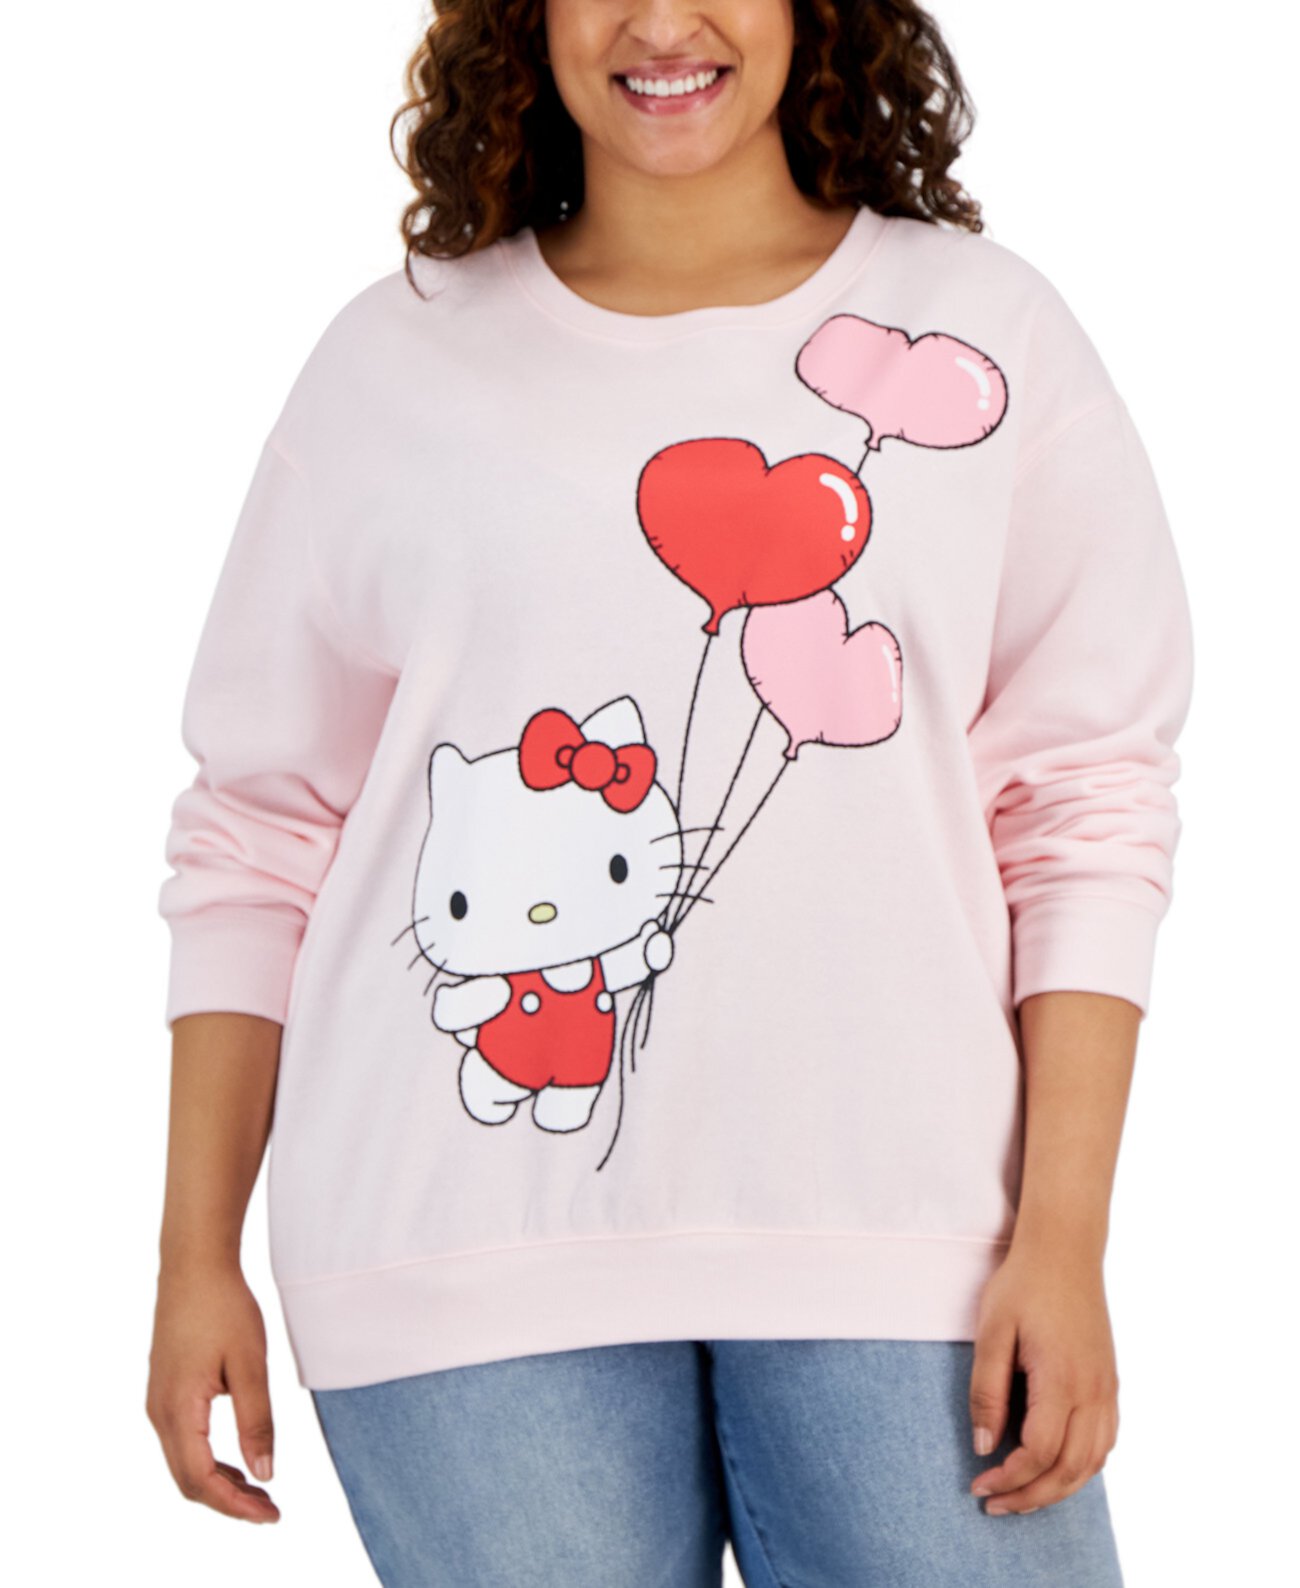 Модный свитшот с графическим принтом размера «Hello Kitty» больших размеров Love Tribe